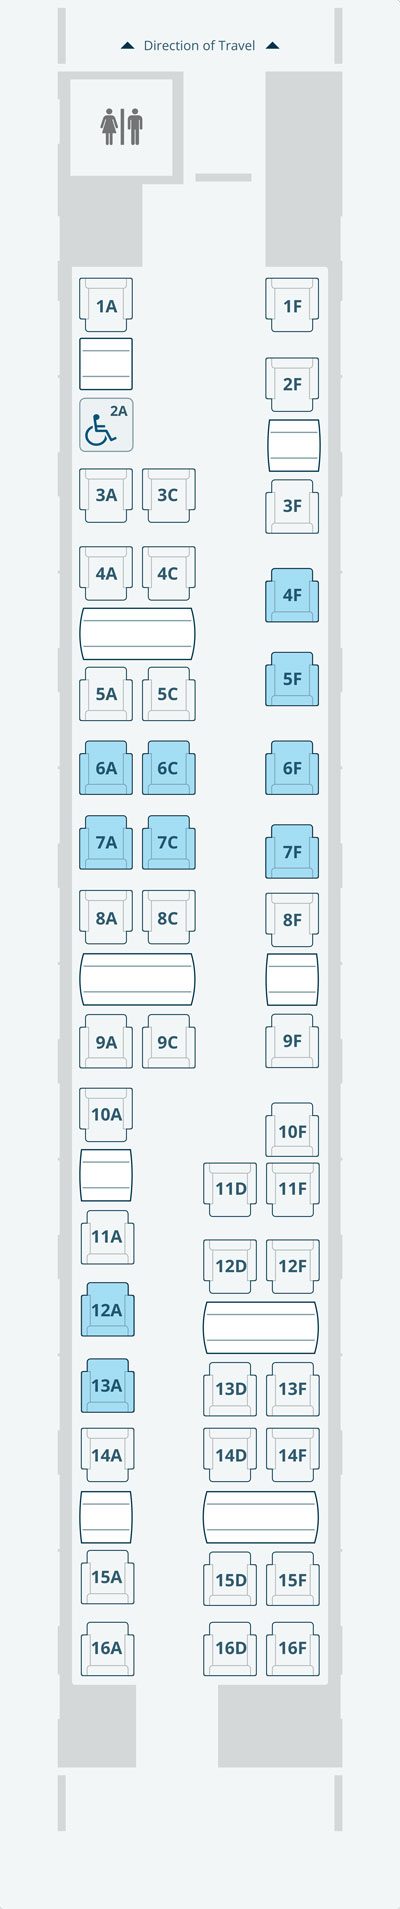 Diagramme des sièges en Première classe Acela